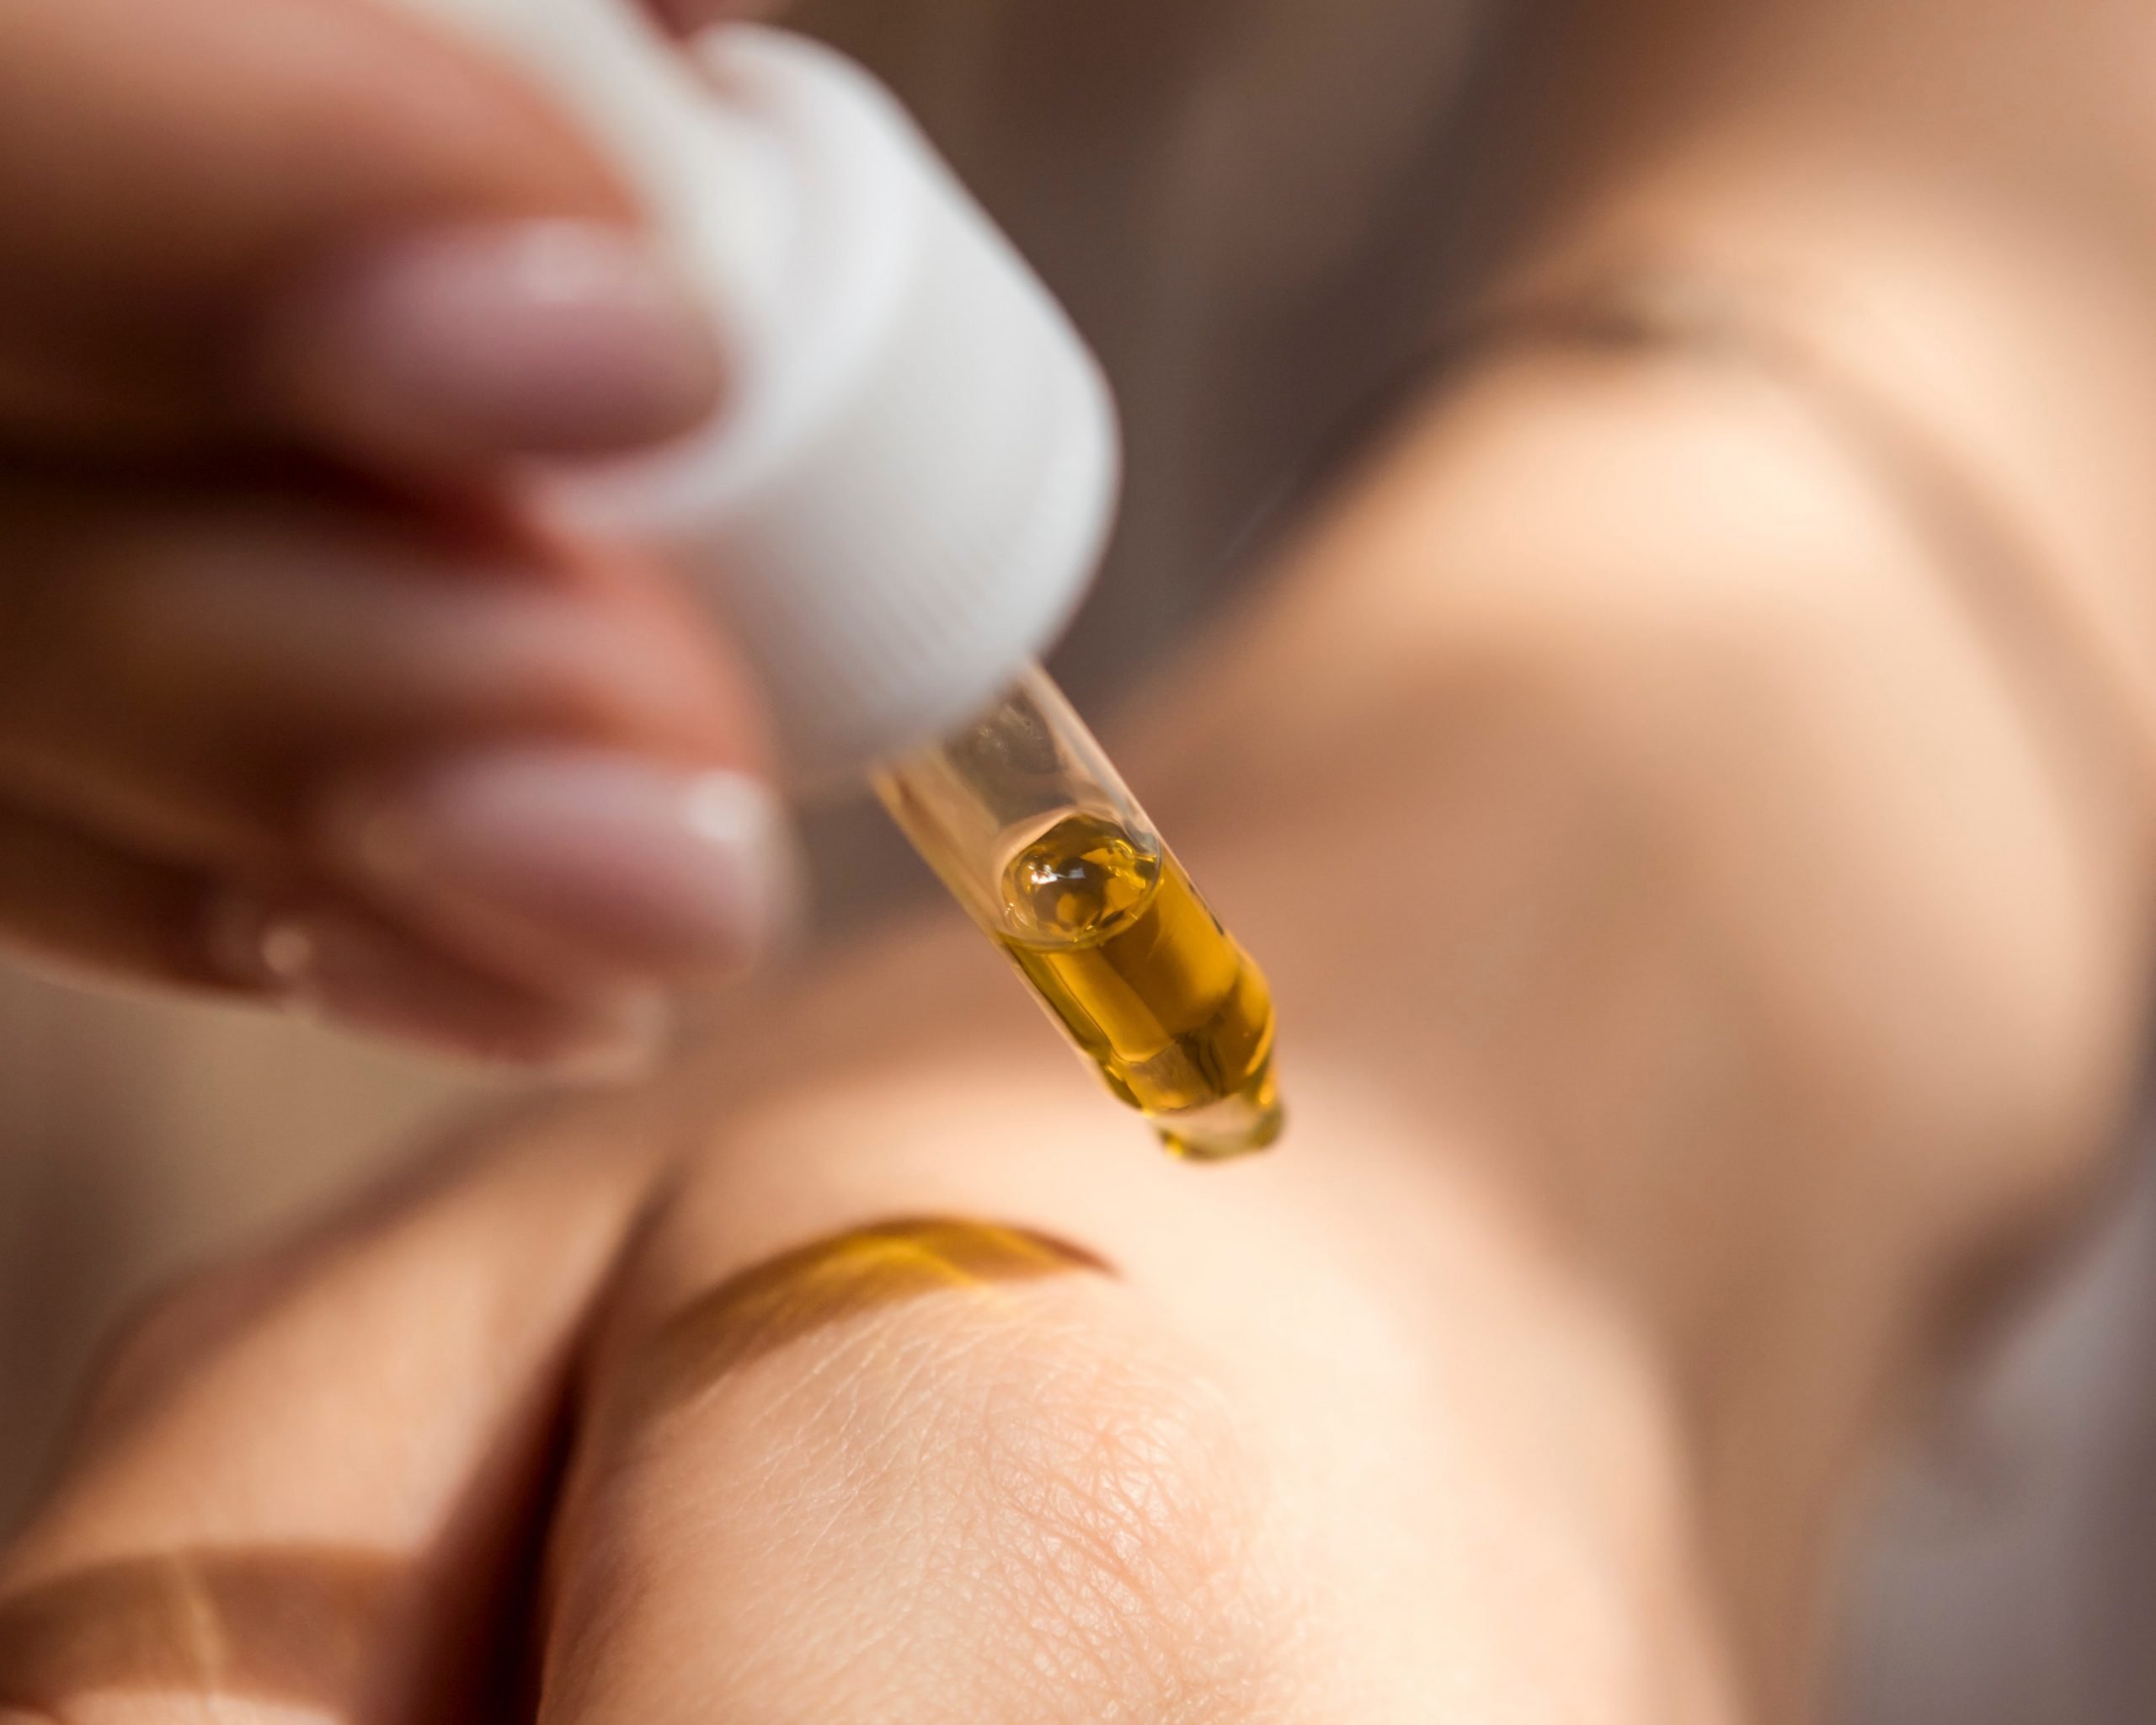 Hemp Seed Oil for Healthier Skin